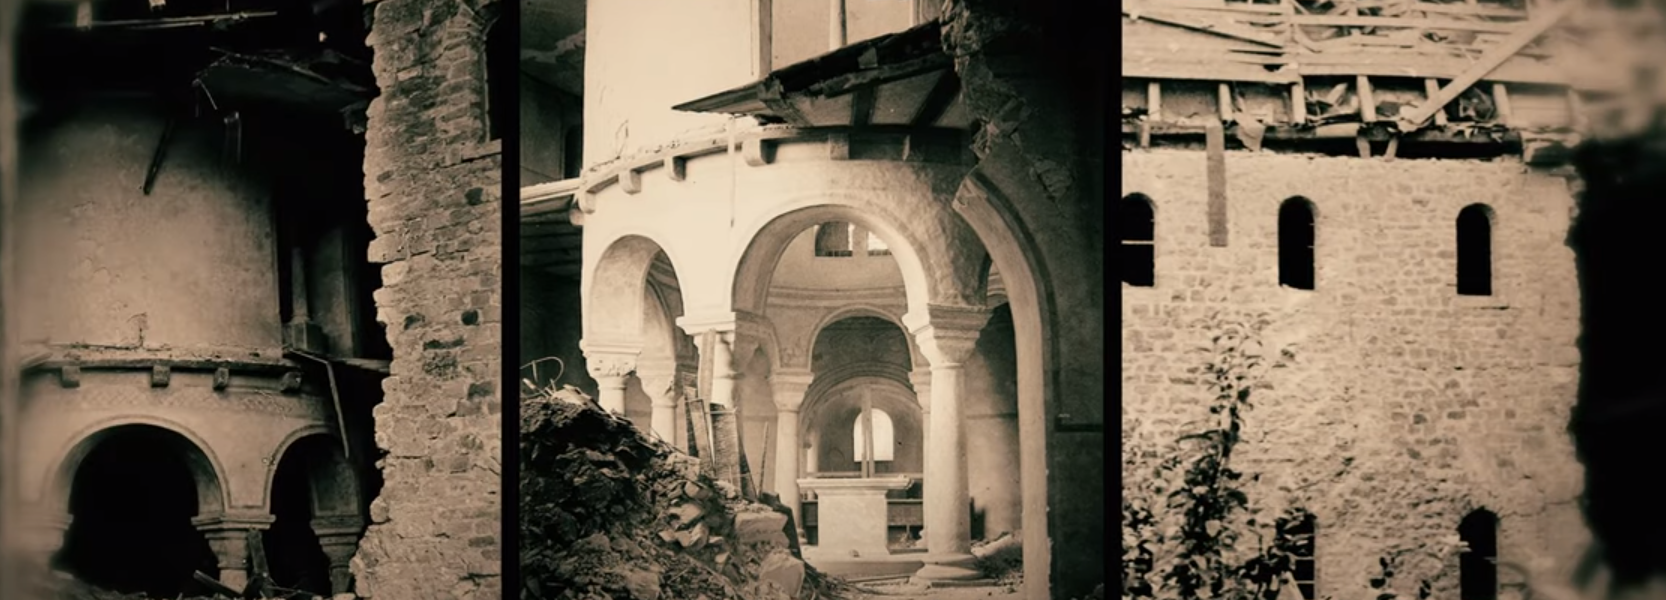 Gedenken an ersten großen Luftangriff auf Fulda vor 79 Jahren